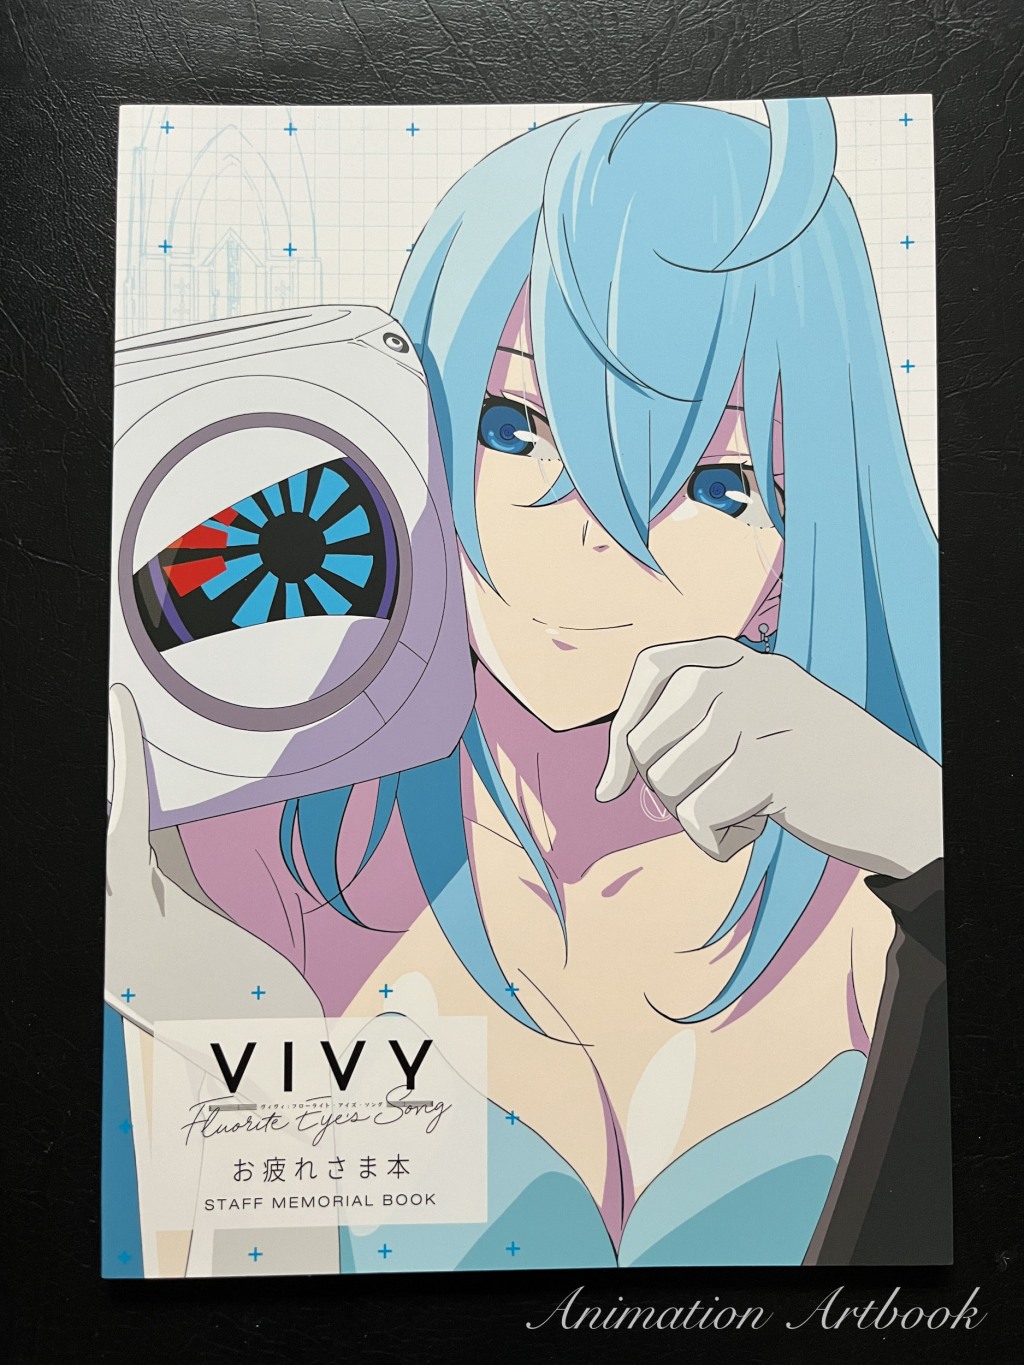 『Vivy: Fluorite Eye’s Song』Staff Memorial Book